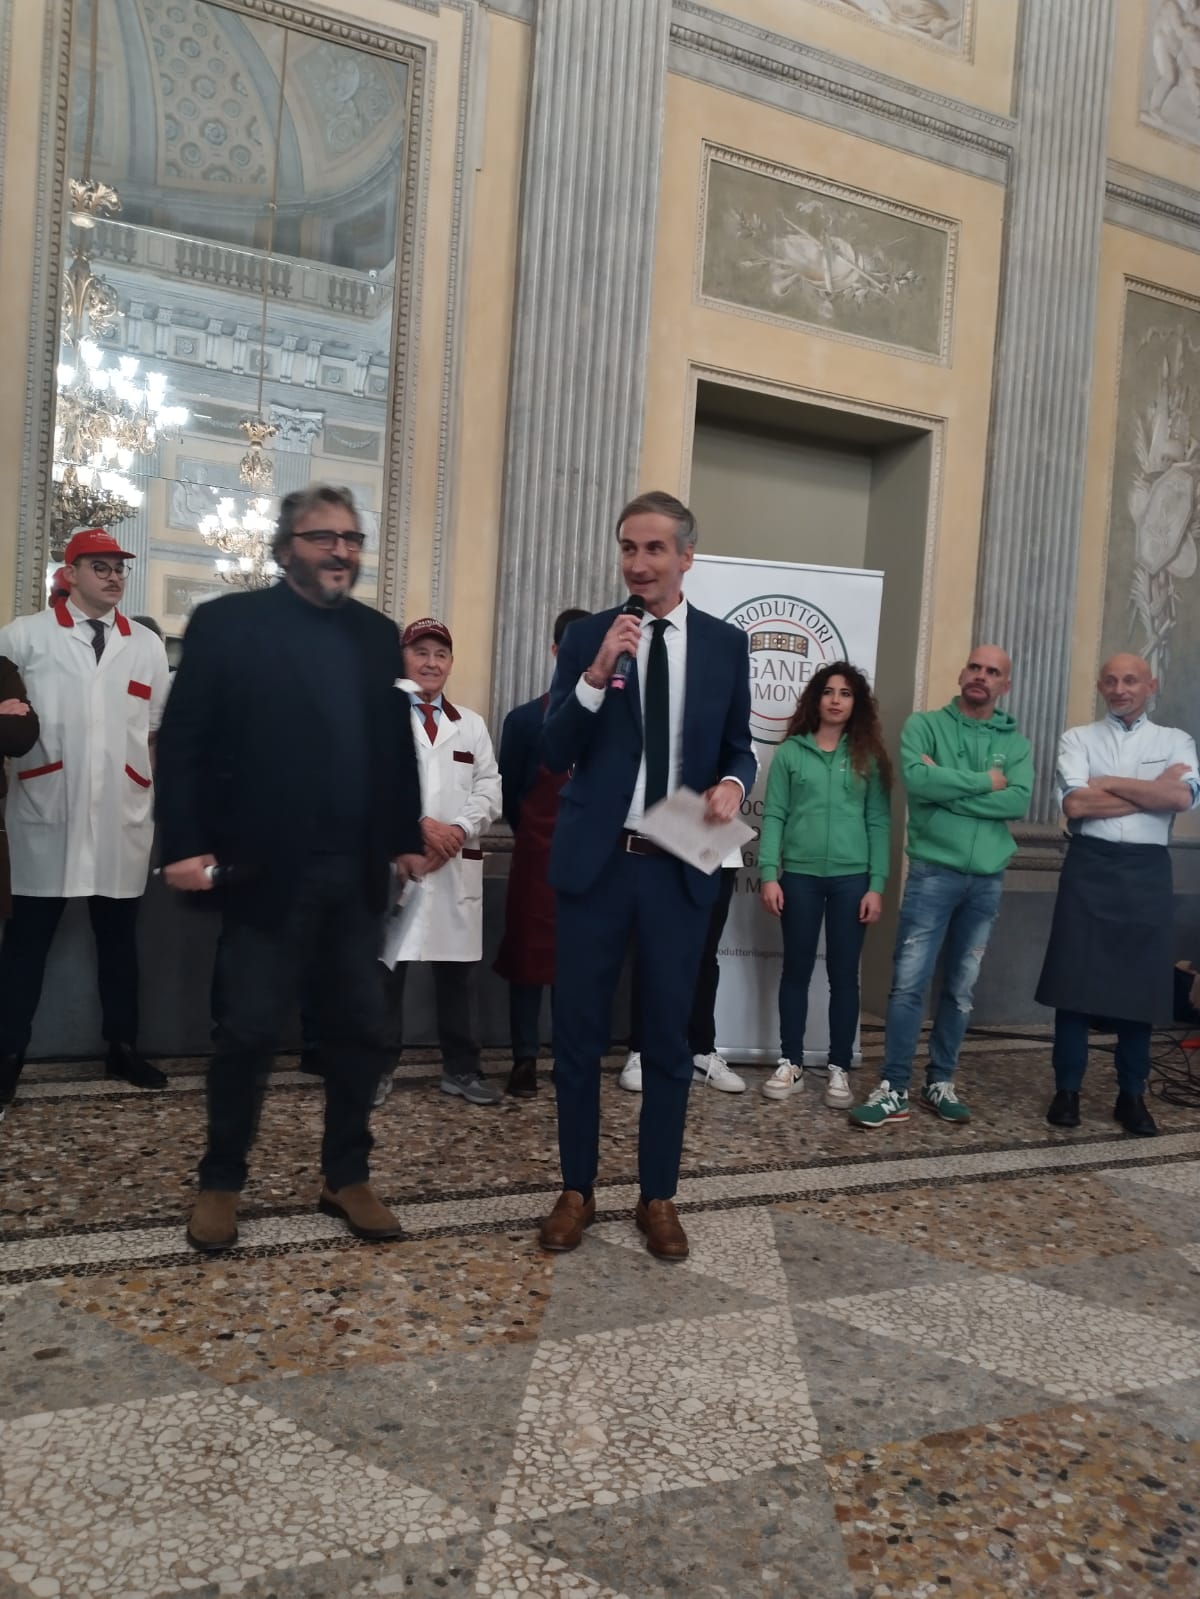 Monza Villa reale presentazione associazione produttori luganega di Monza presidente Consiglio regionale Alessandro Fermi